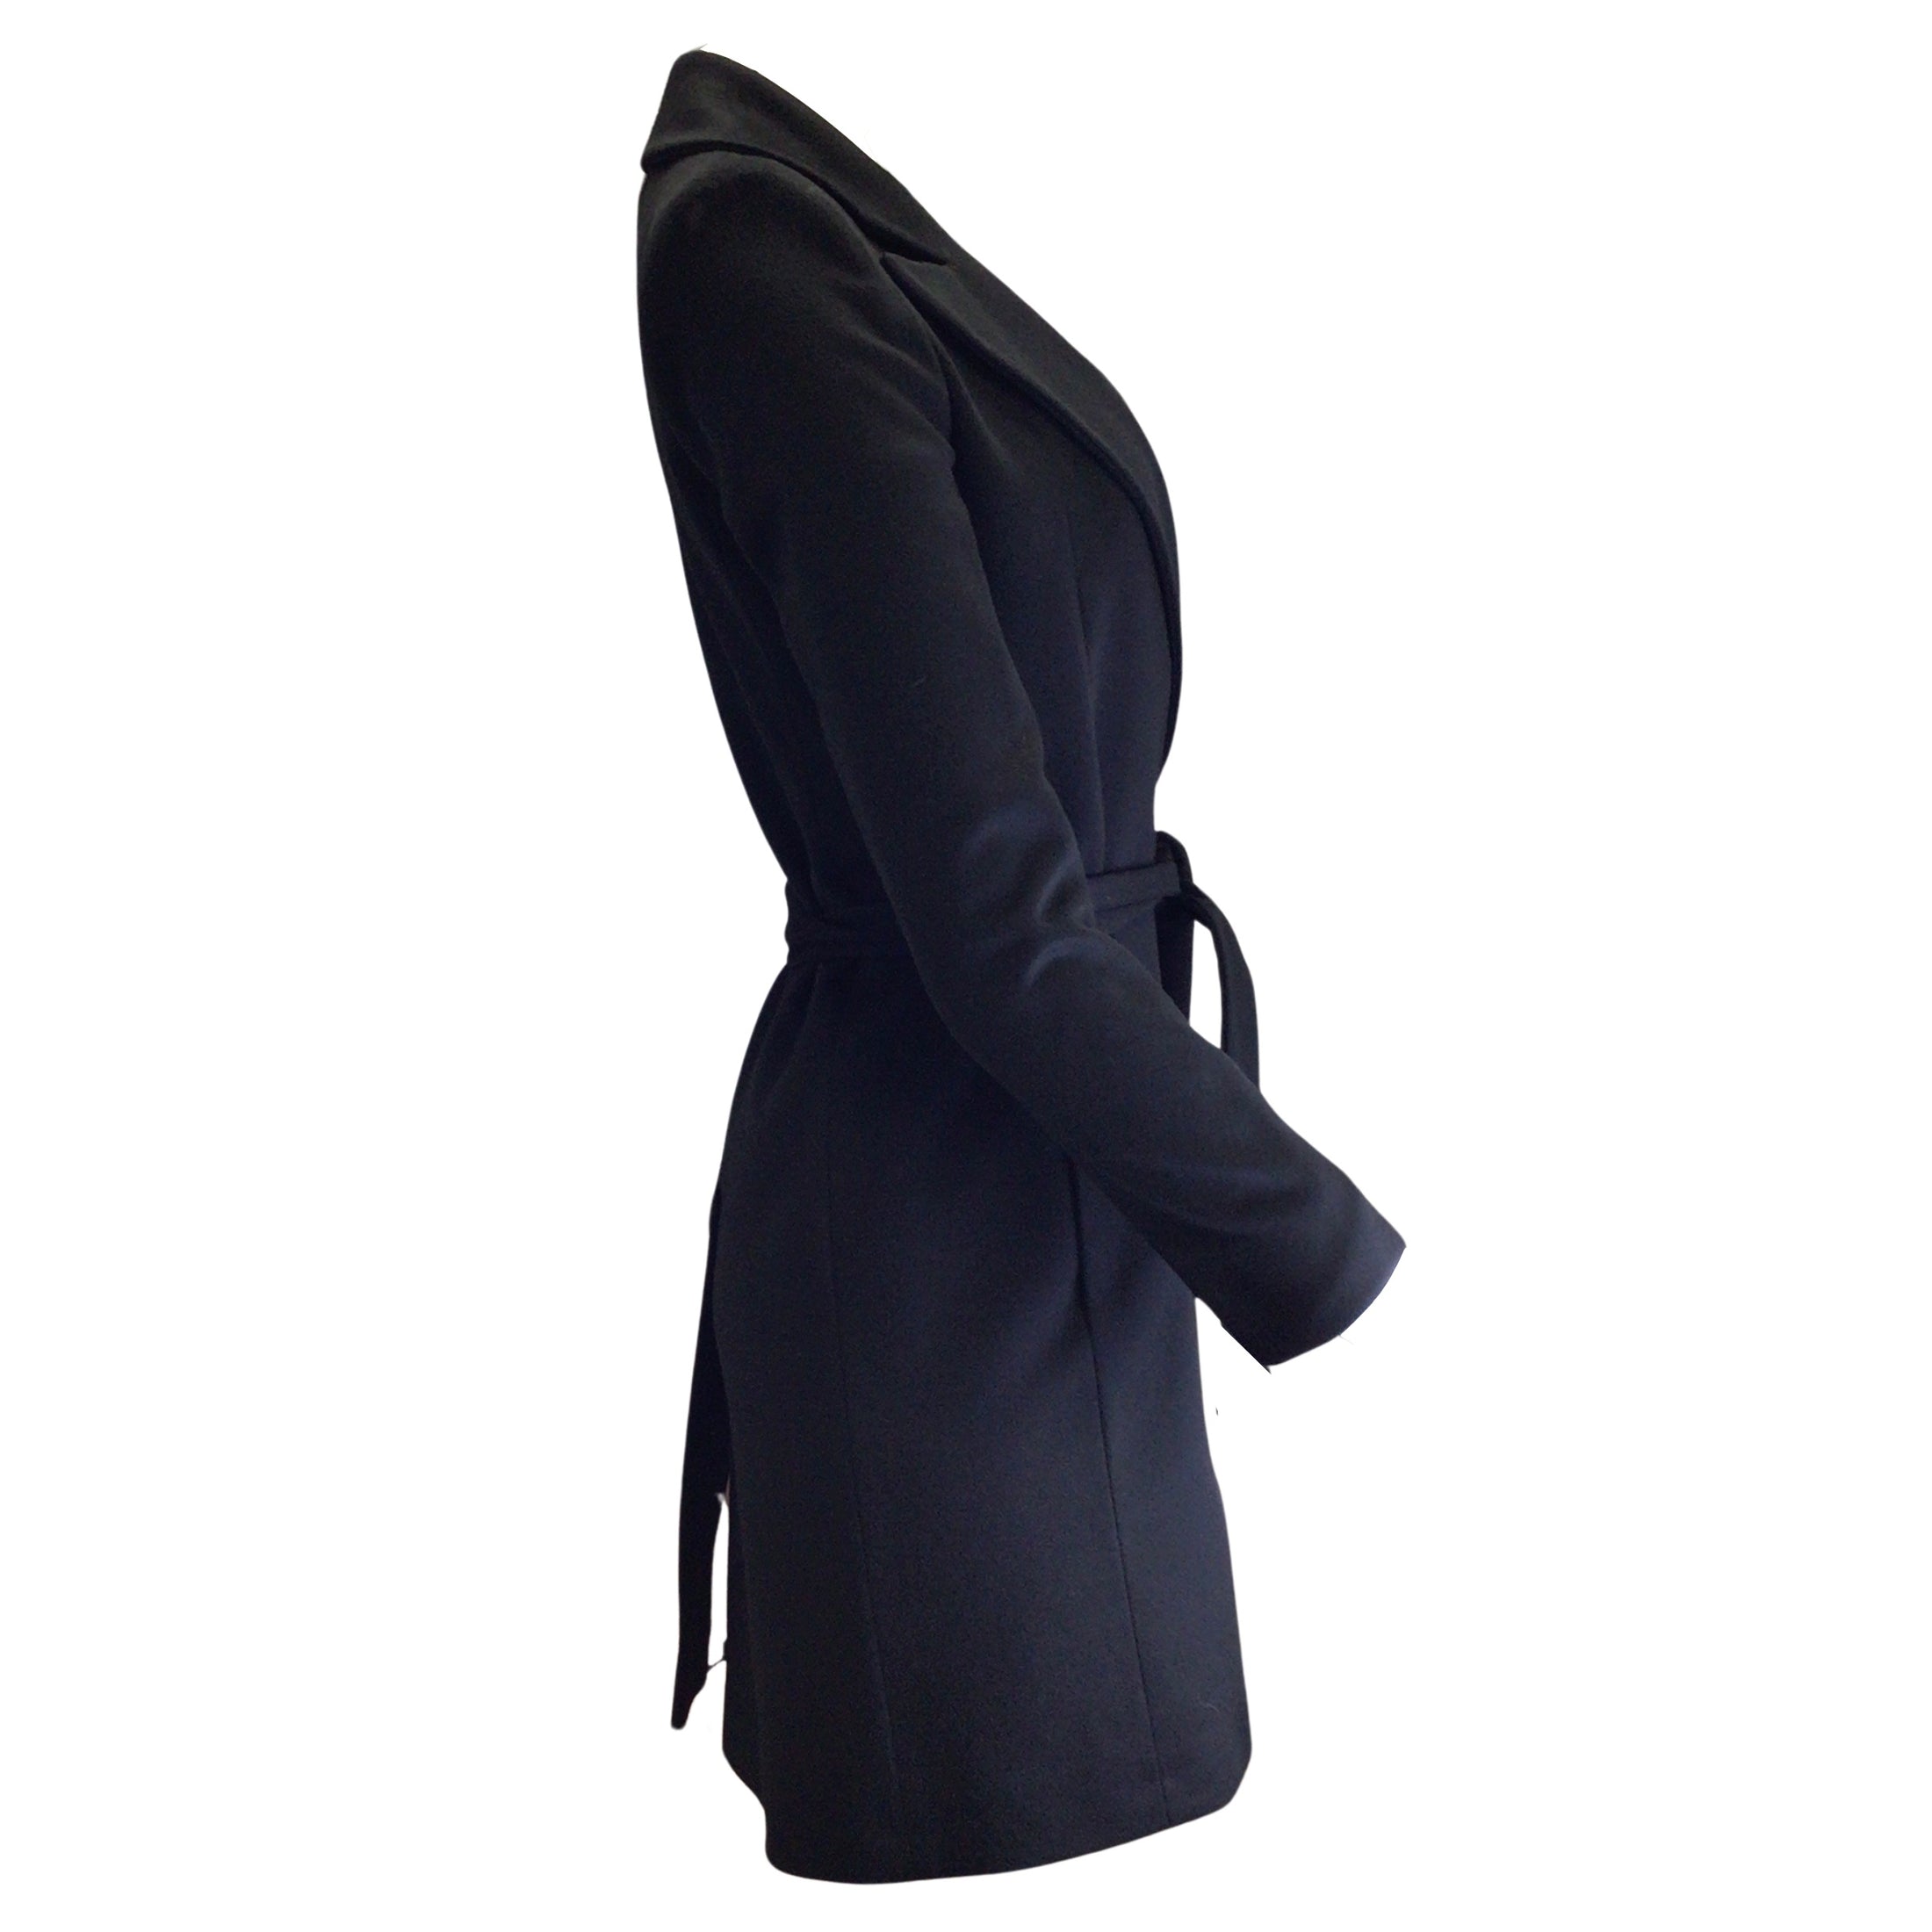 Fleurette Black Belted Mid-Length Cashmere Trench Coat